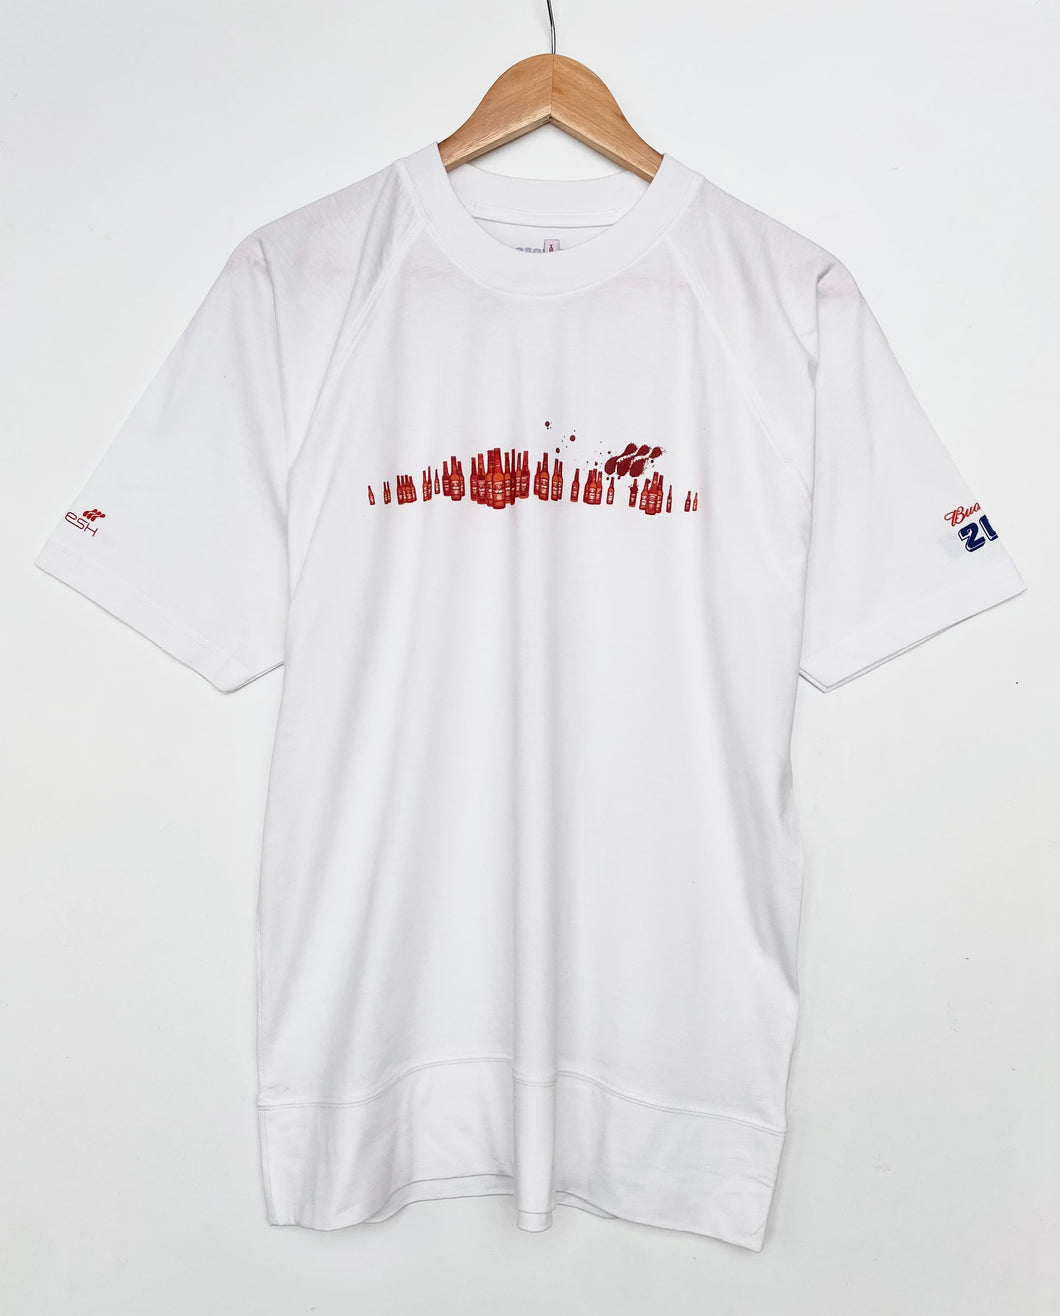 2003 Budweiser T-shirt (XL)